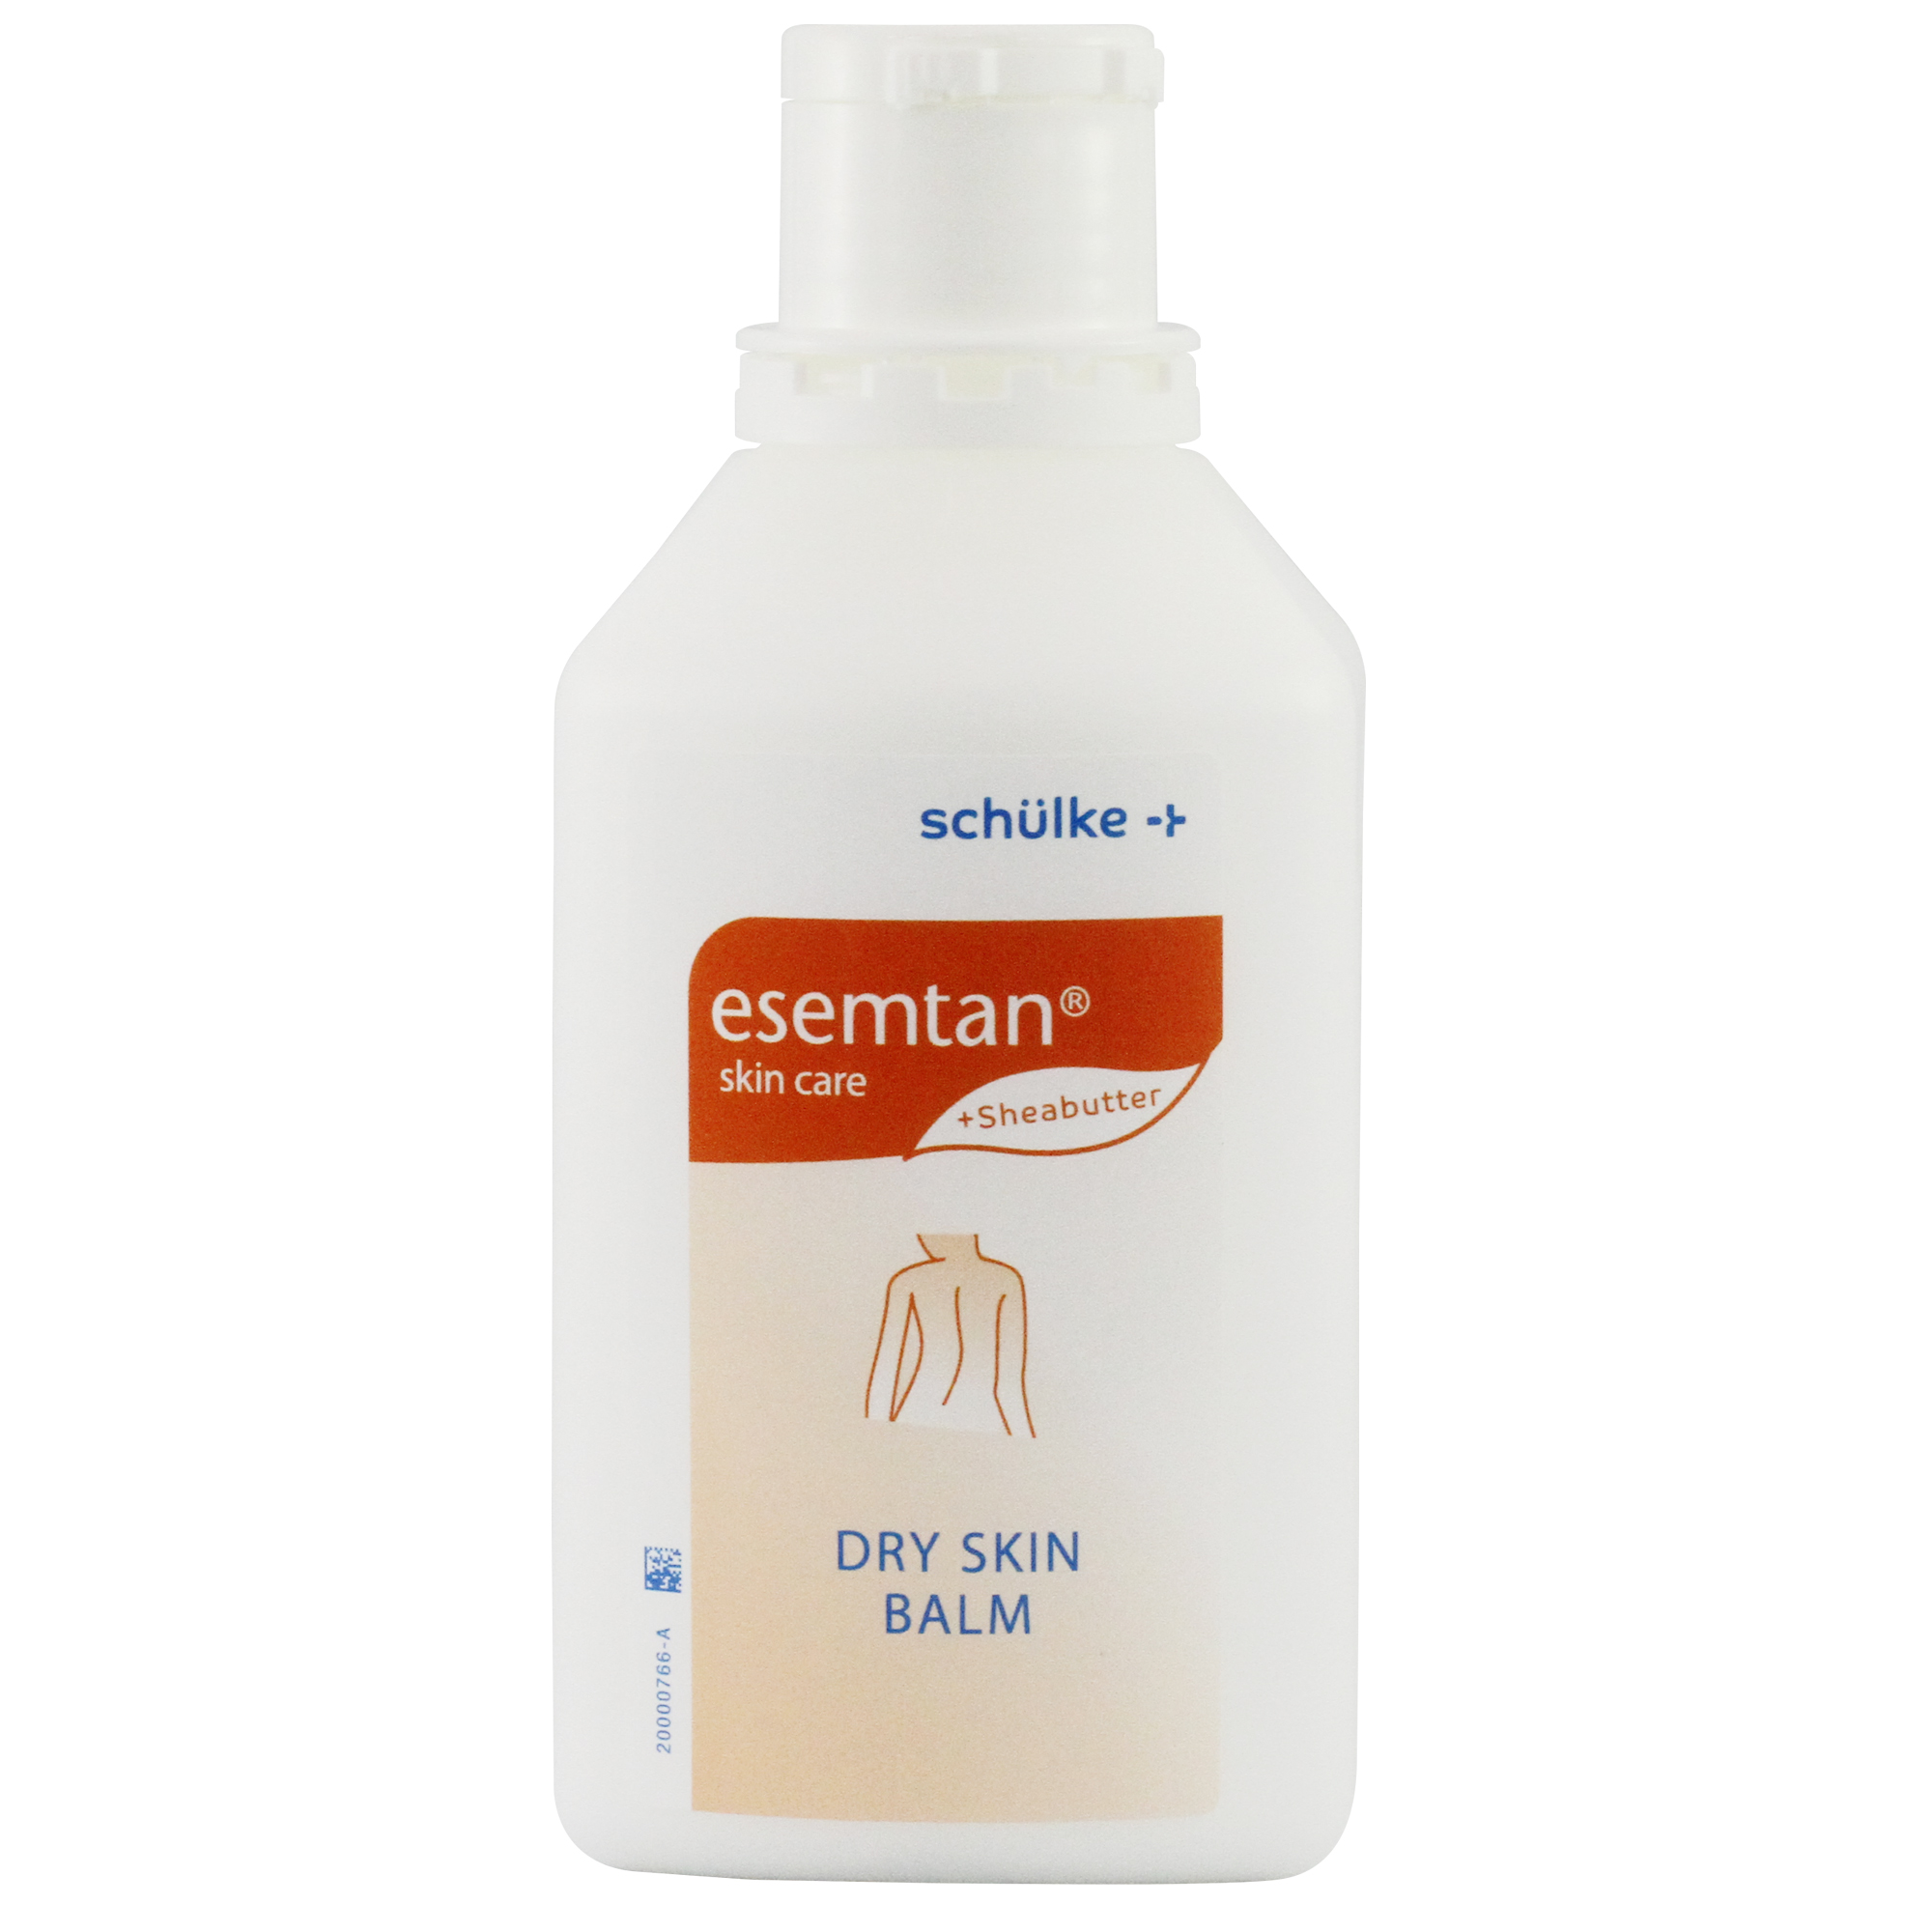 esemtan® dry skin balm 500 ml farbstofffreier Körperpflege-Balsam